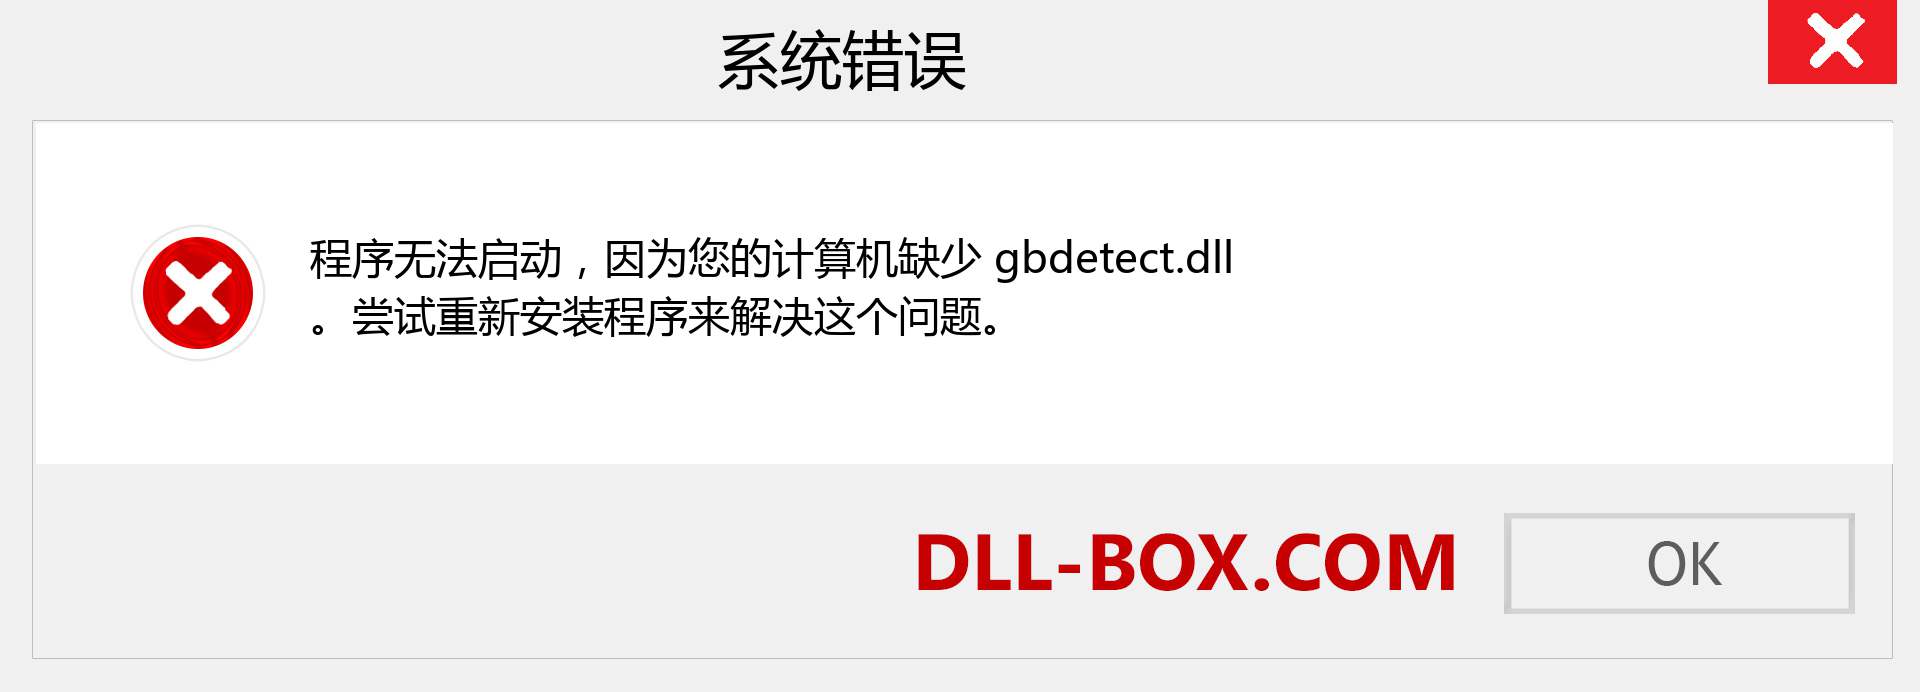 gbdetect.dll 文件丢失？。 适用于 Windows 7、8、10 的下载 - 修复 Windows、照片、图像上的 gbdetect dll 丢失错误